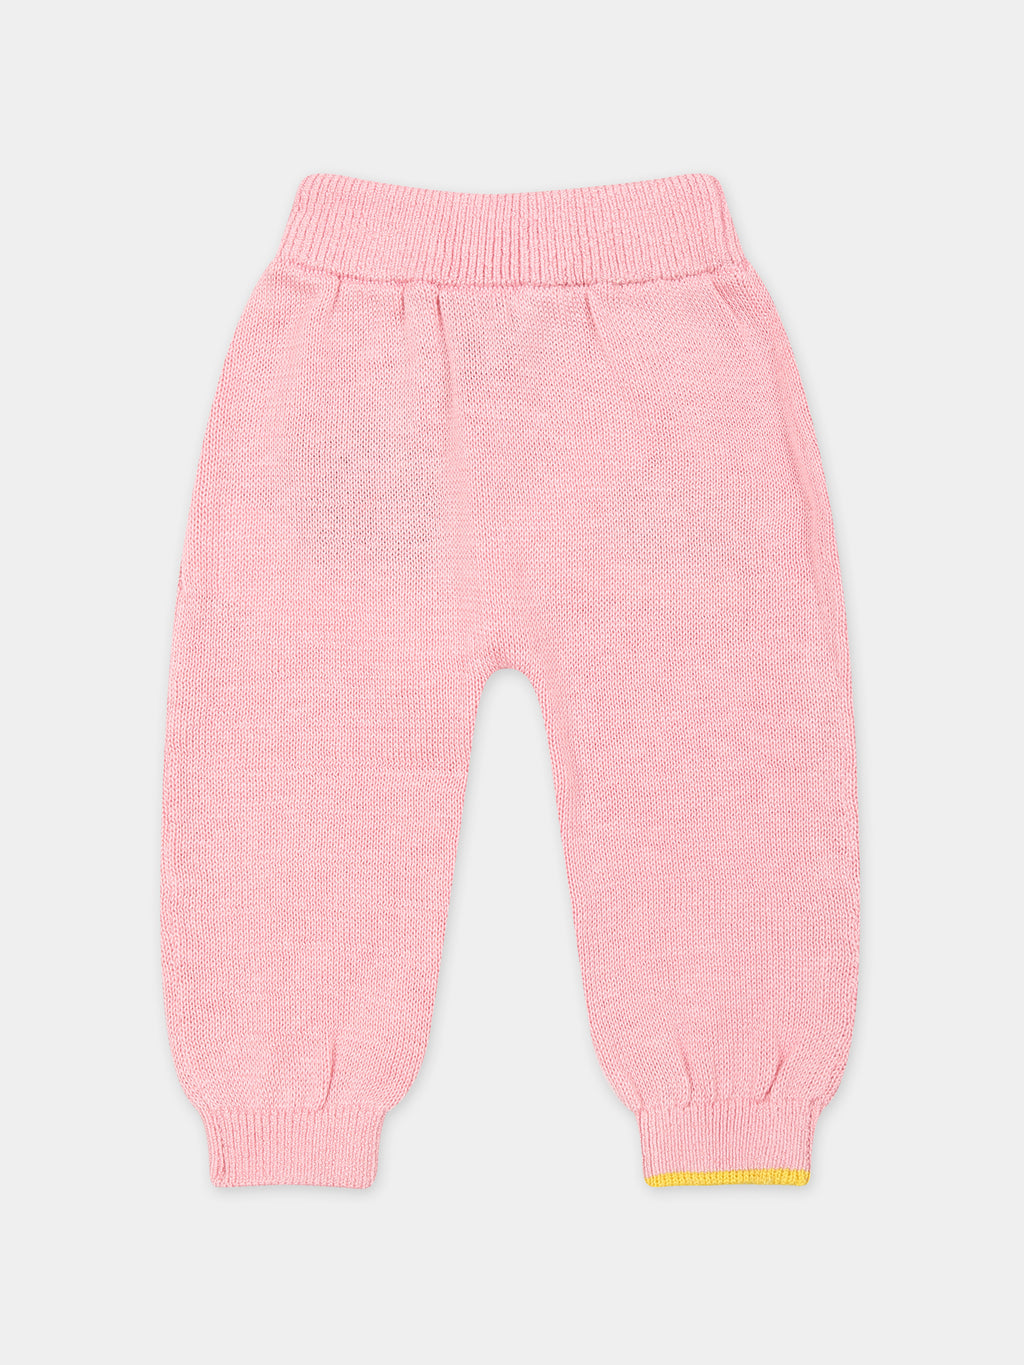 Pantalon rose pour bébé fille